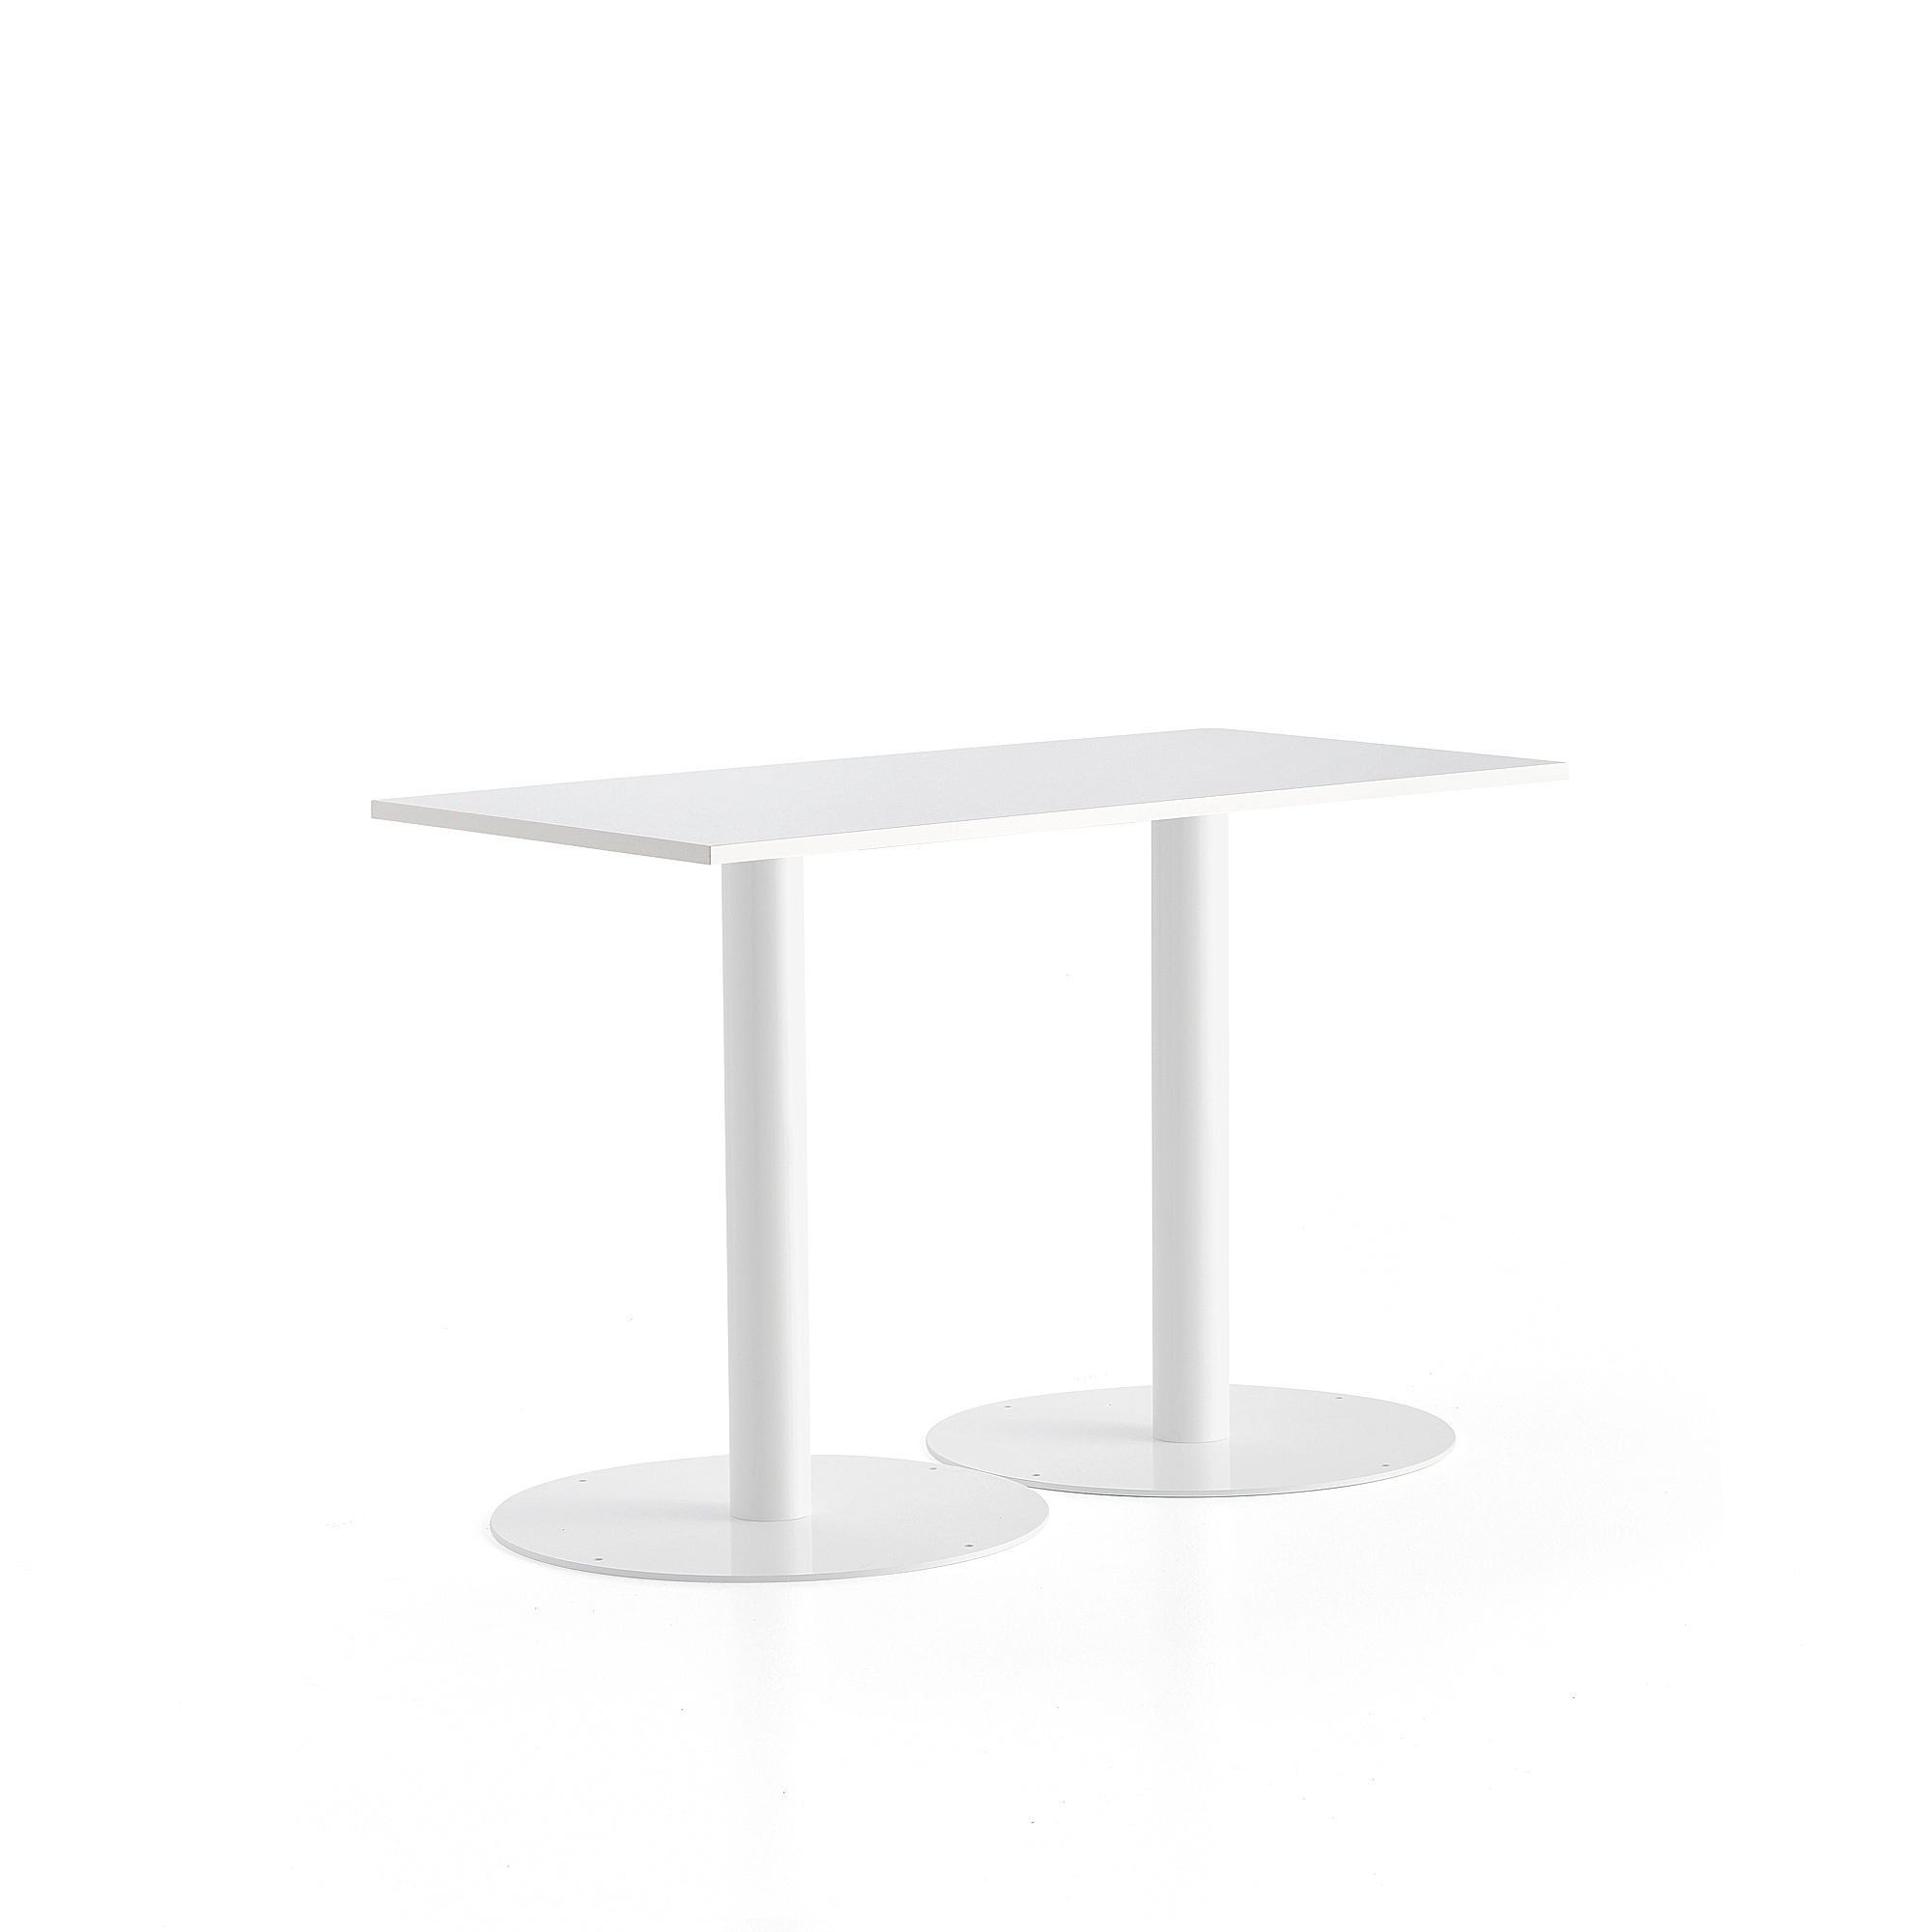 Stůl ALVA, 1400x700x900 mm, bílá, bílá